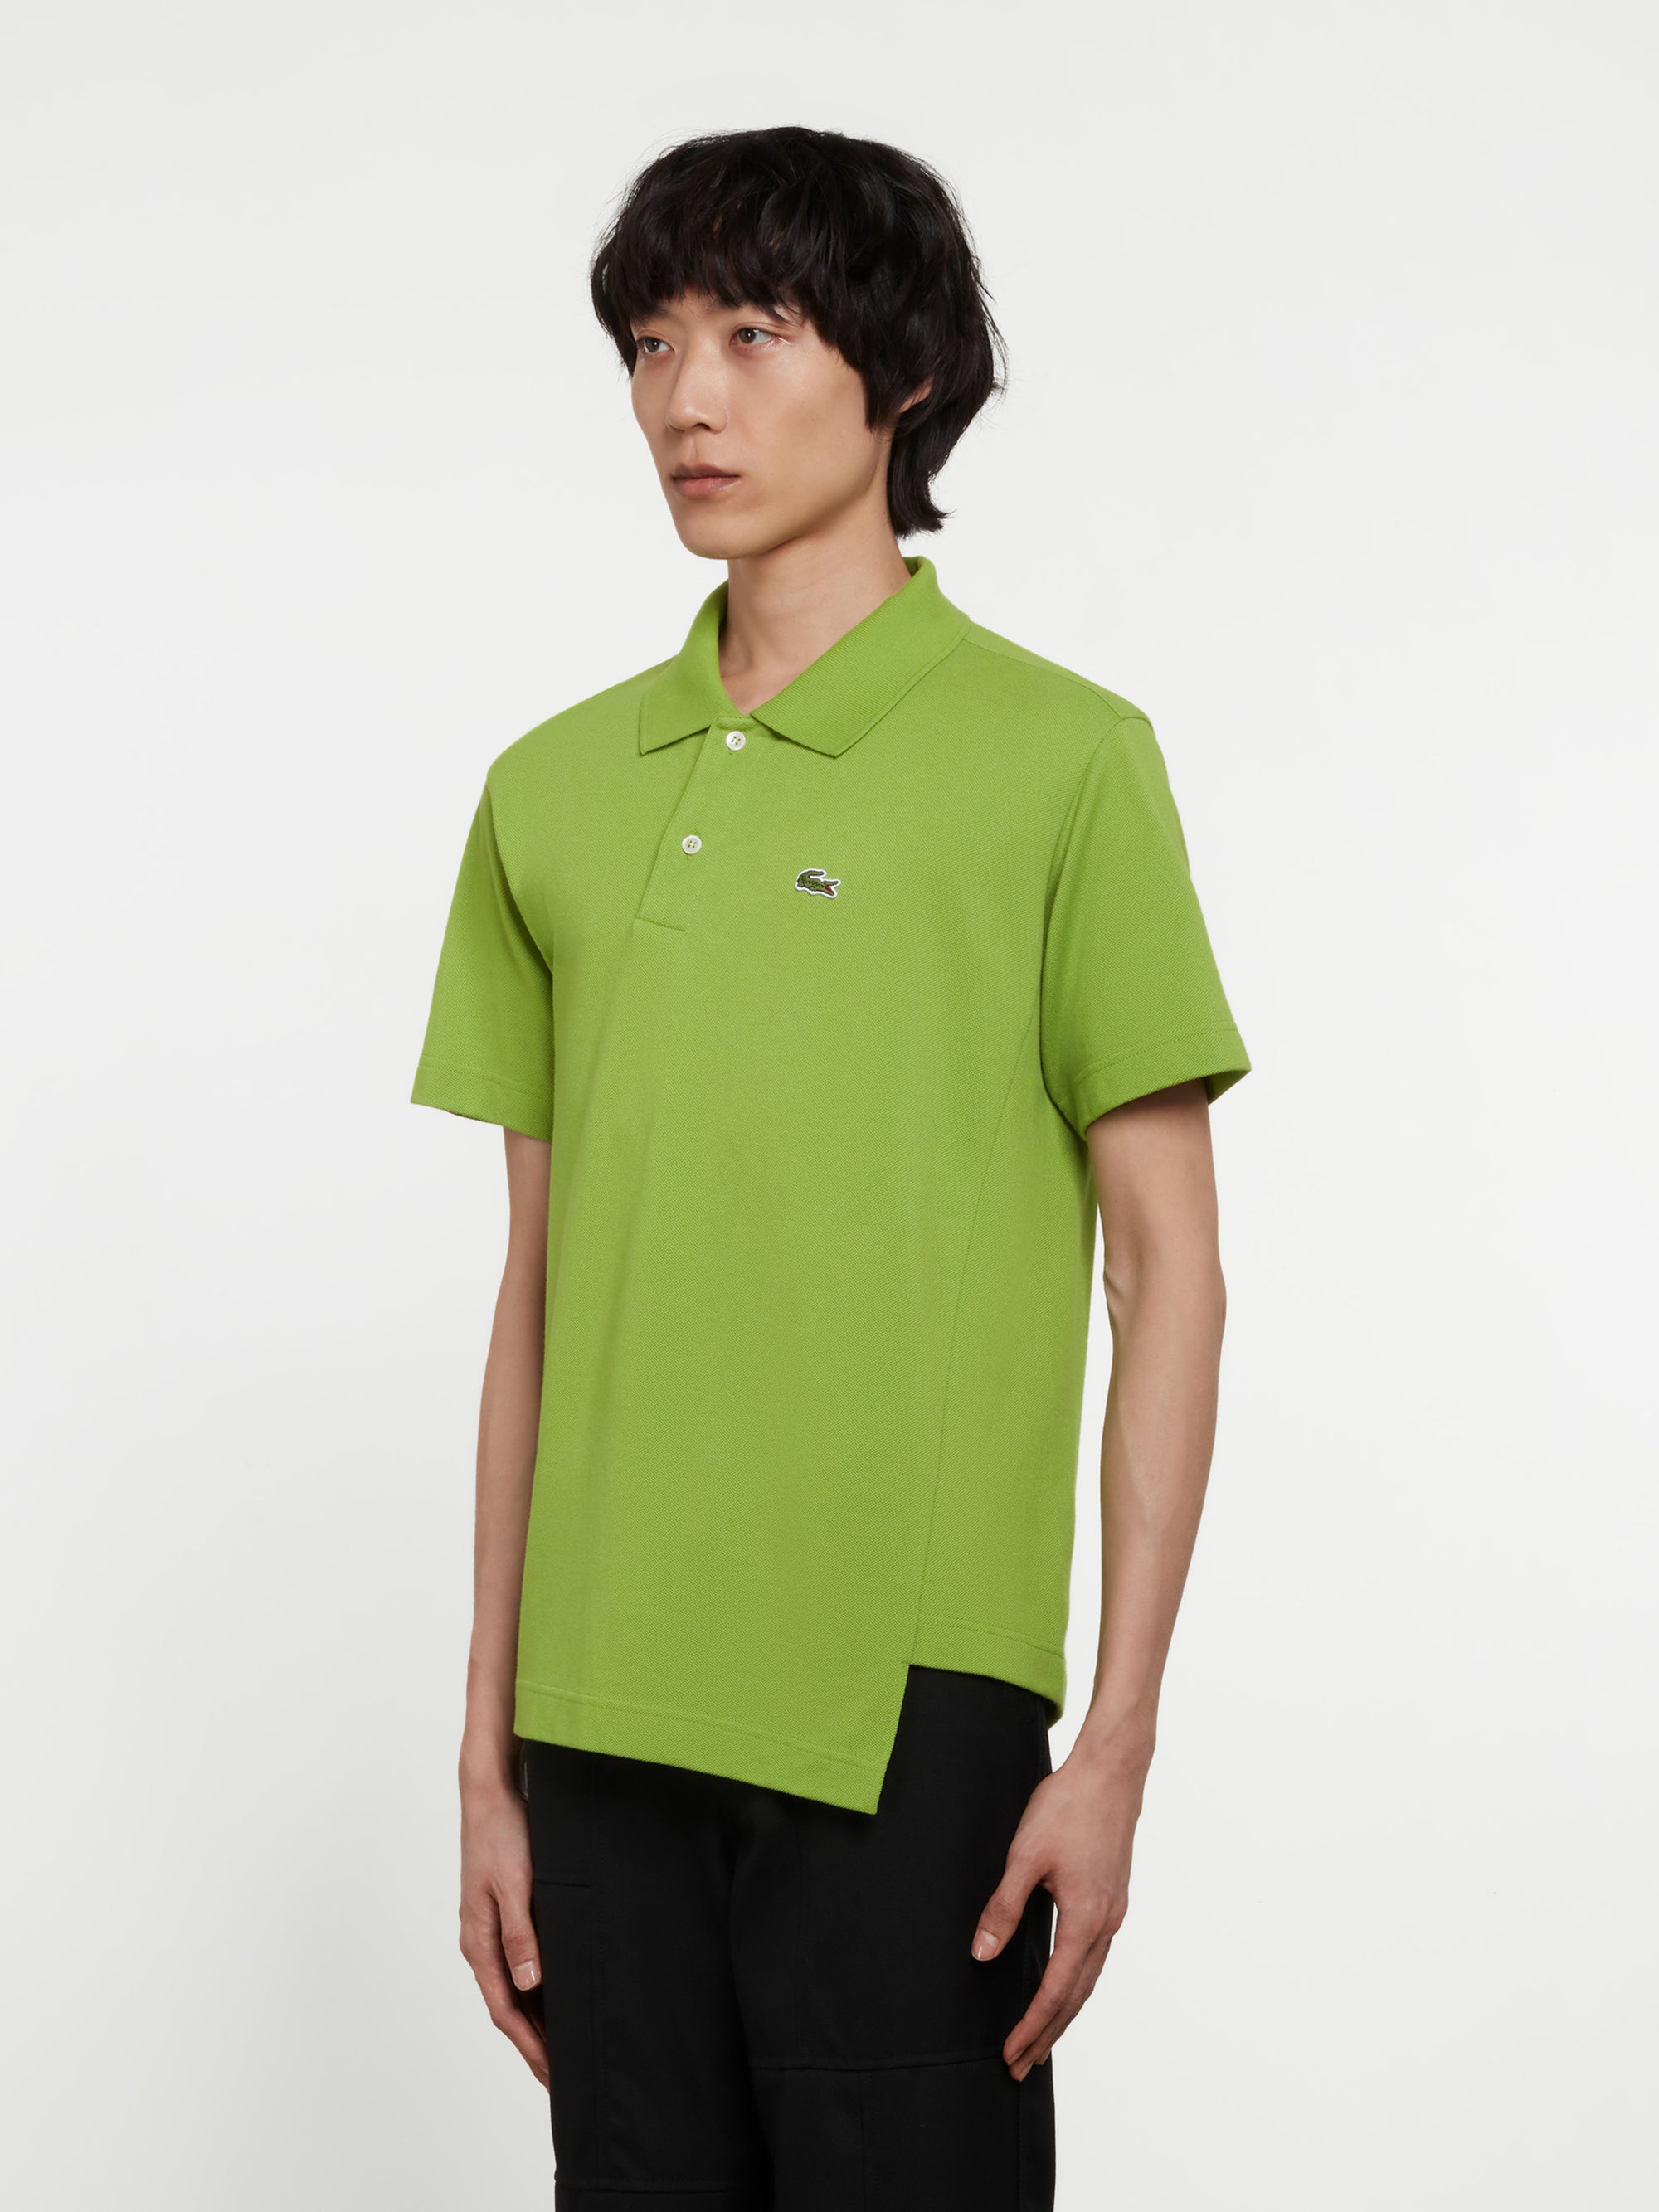 CDG Shirt - Lacoste Men’s Polo Shirt - (Green) view 2